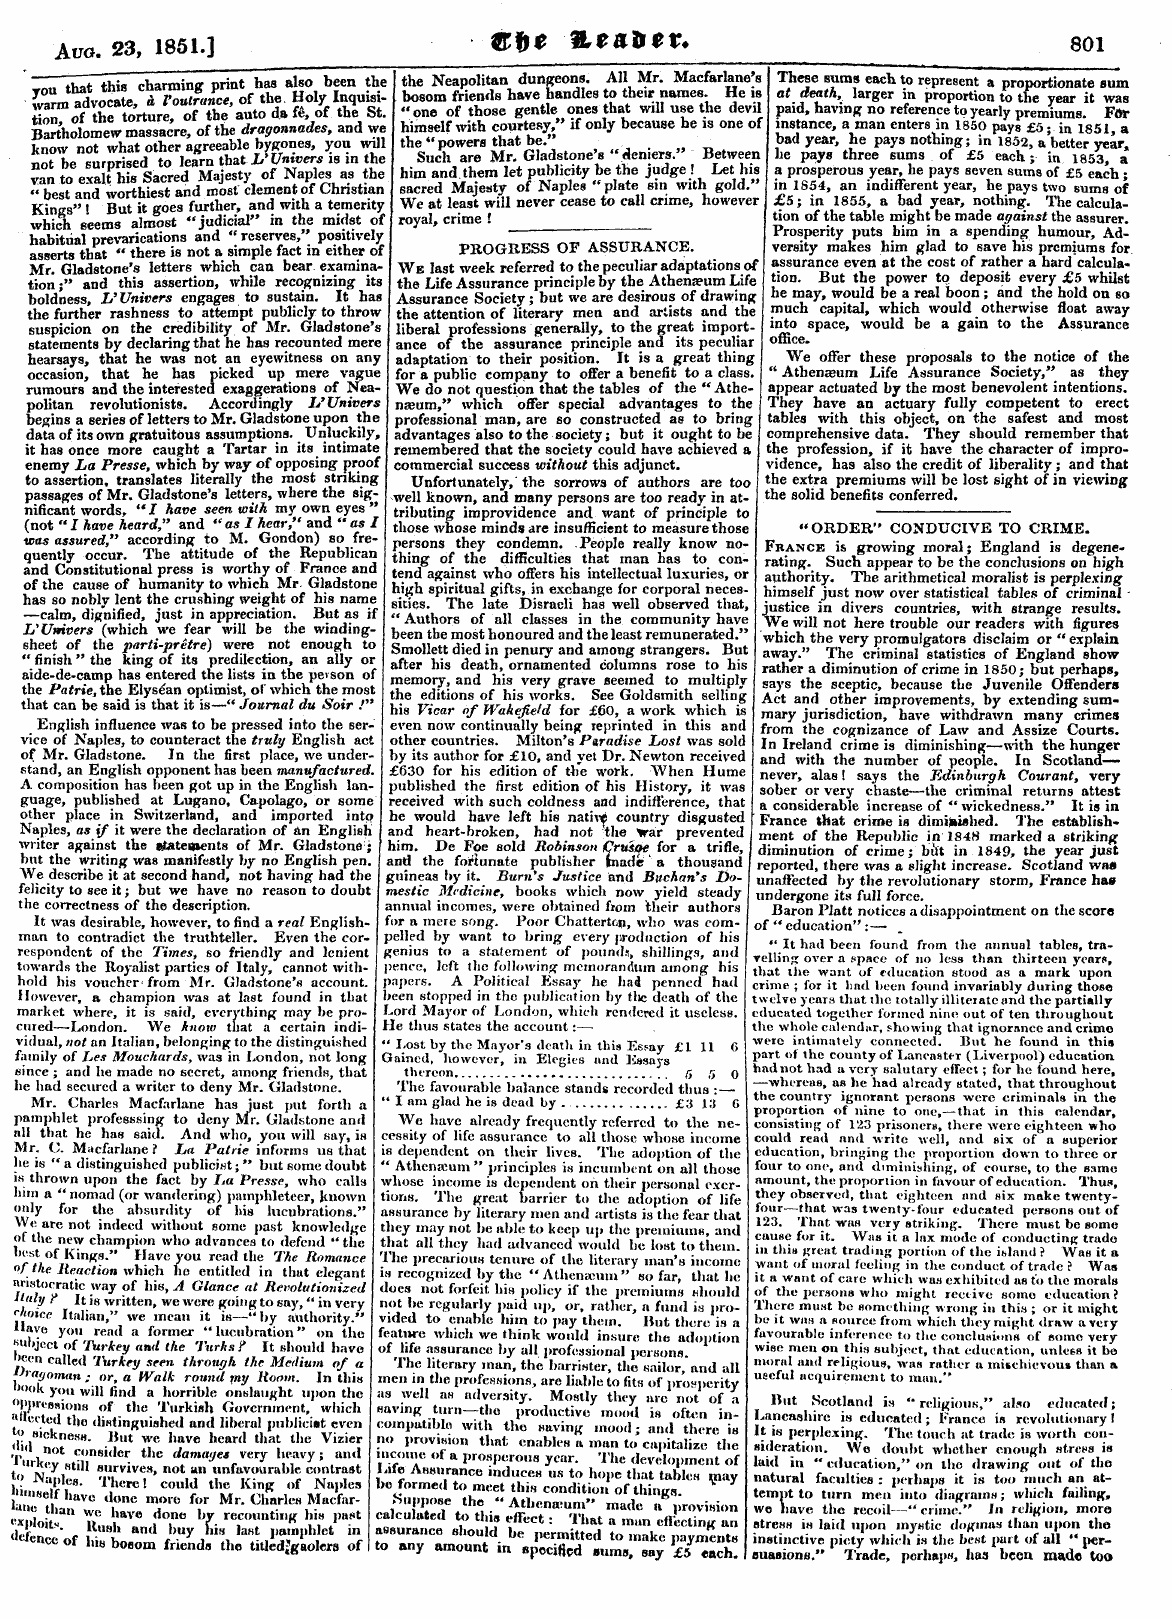 Leader (1850-1860): jS F Y, Country edition - Aug. 23, 1851.] Ffftl 1lta*Tx. 801